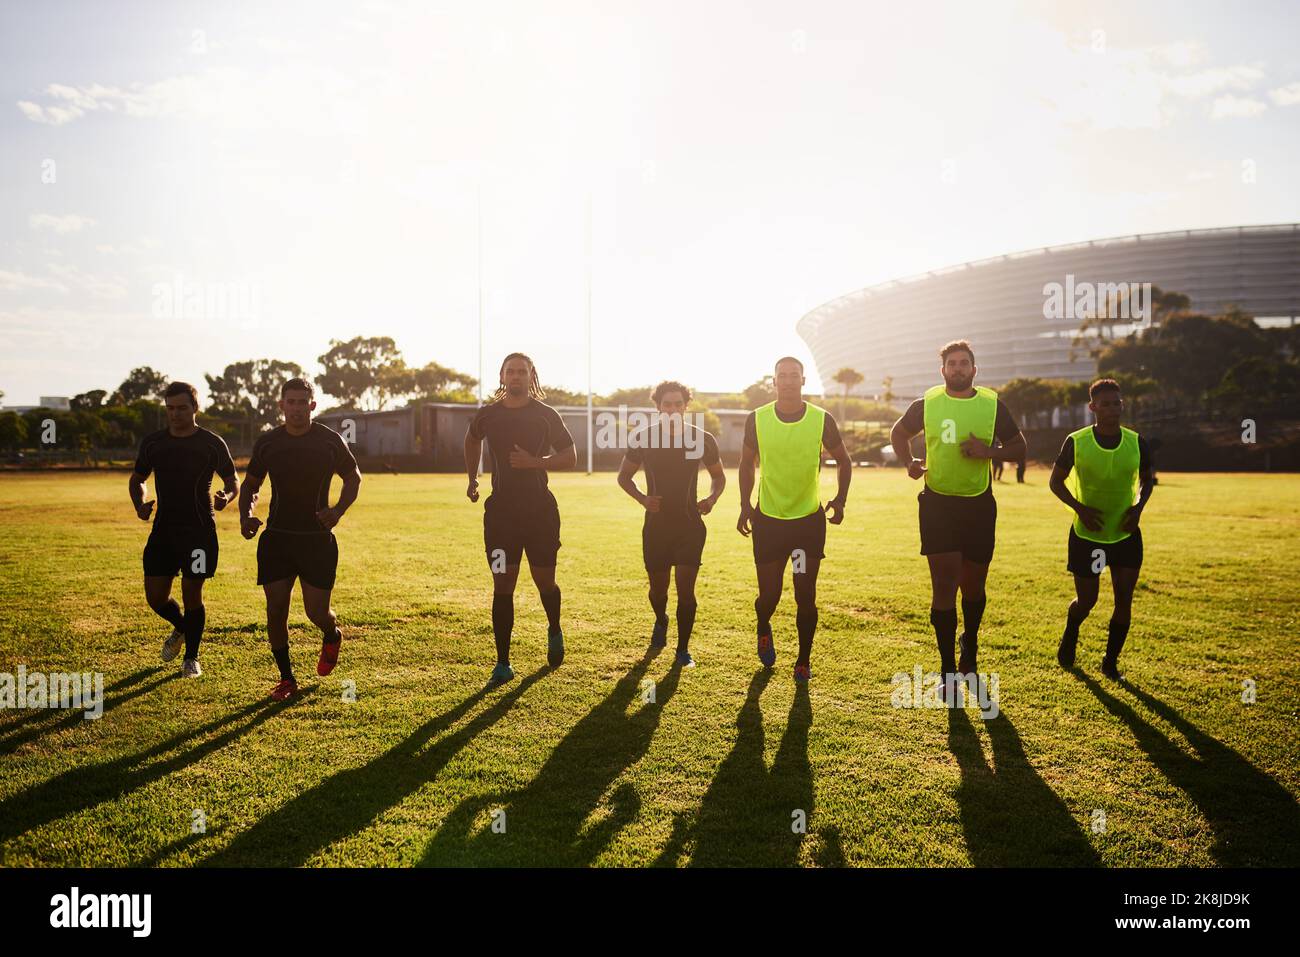 Corremos todos los días. Tiro completo de un grupo diverso de deportistas que se calientan antes de jugar al rugby durante el día. Foto de stock